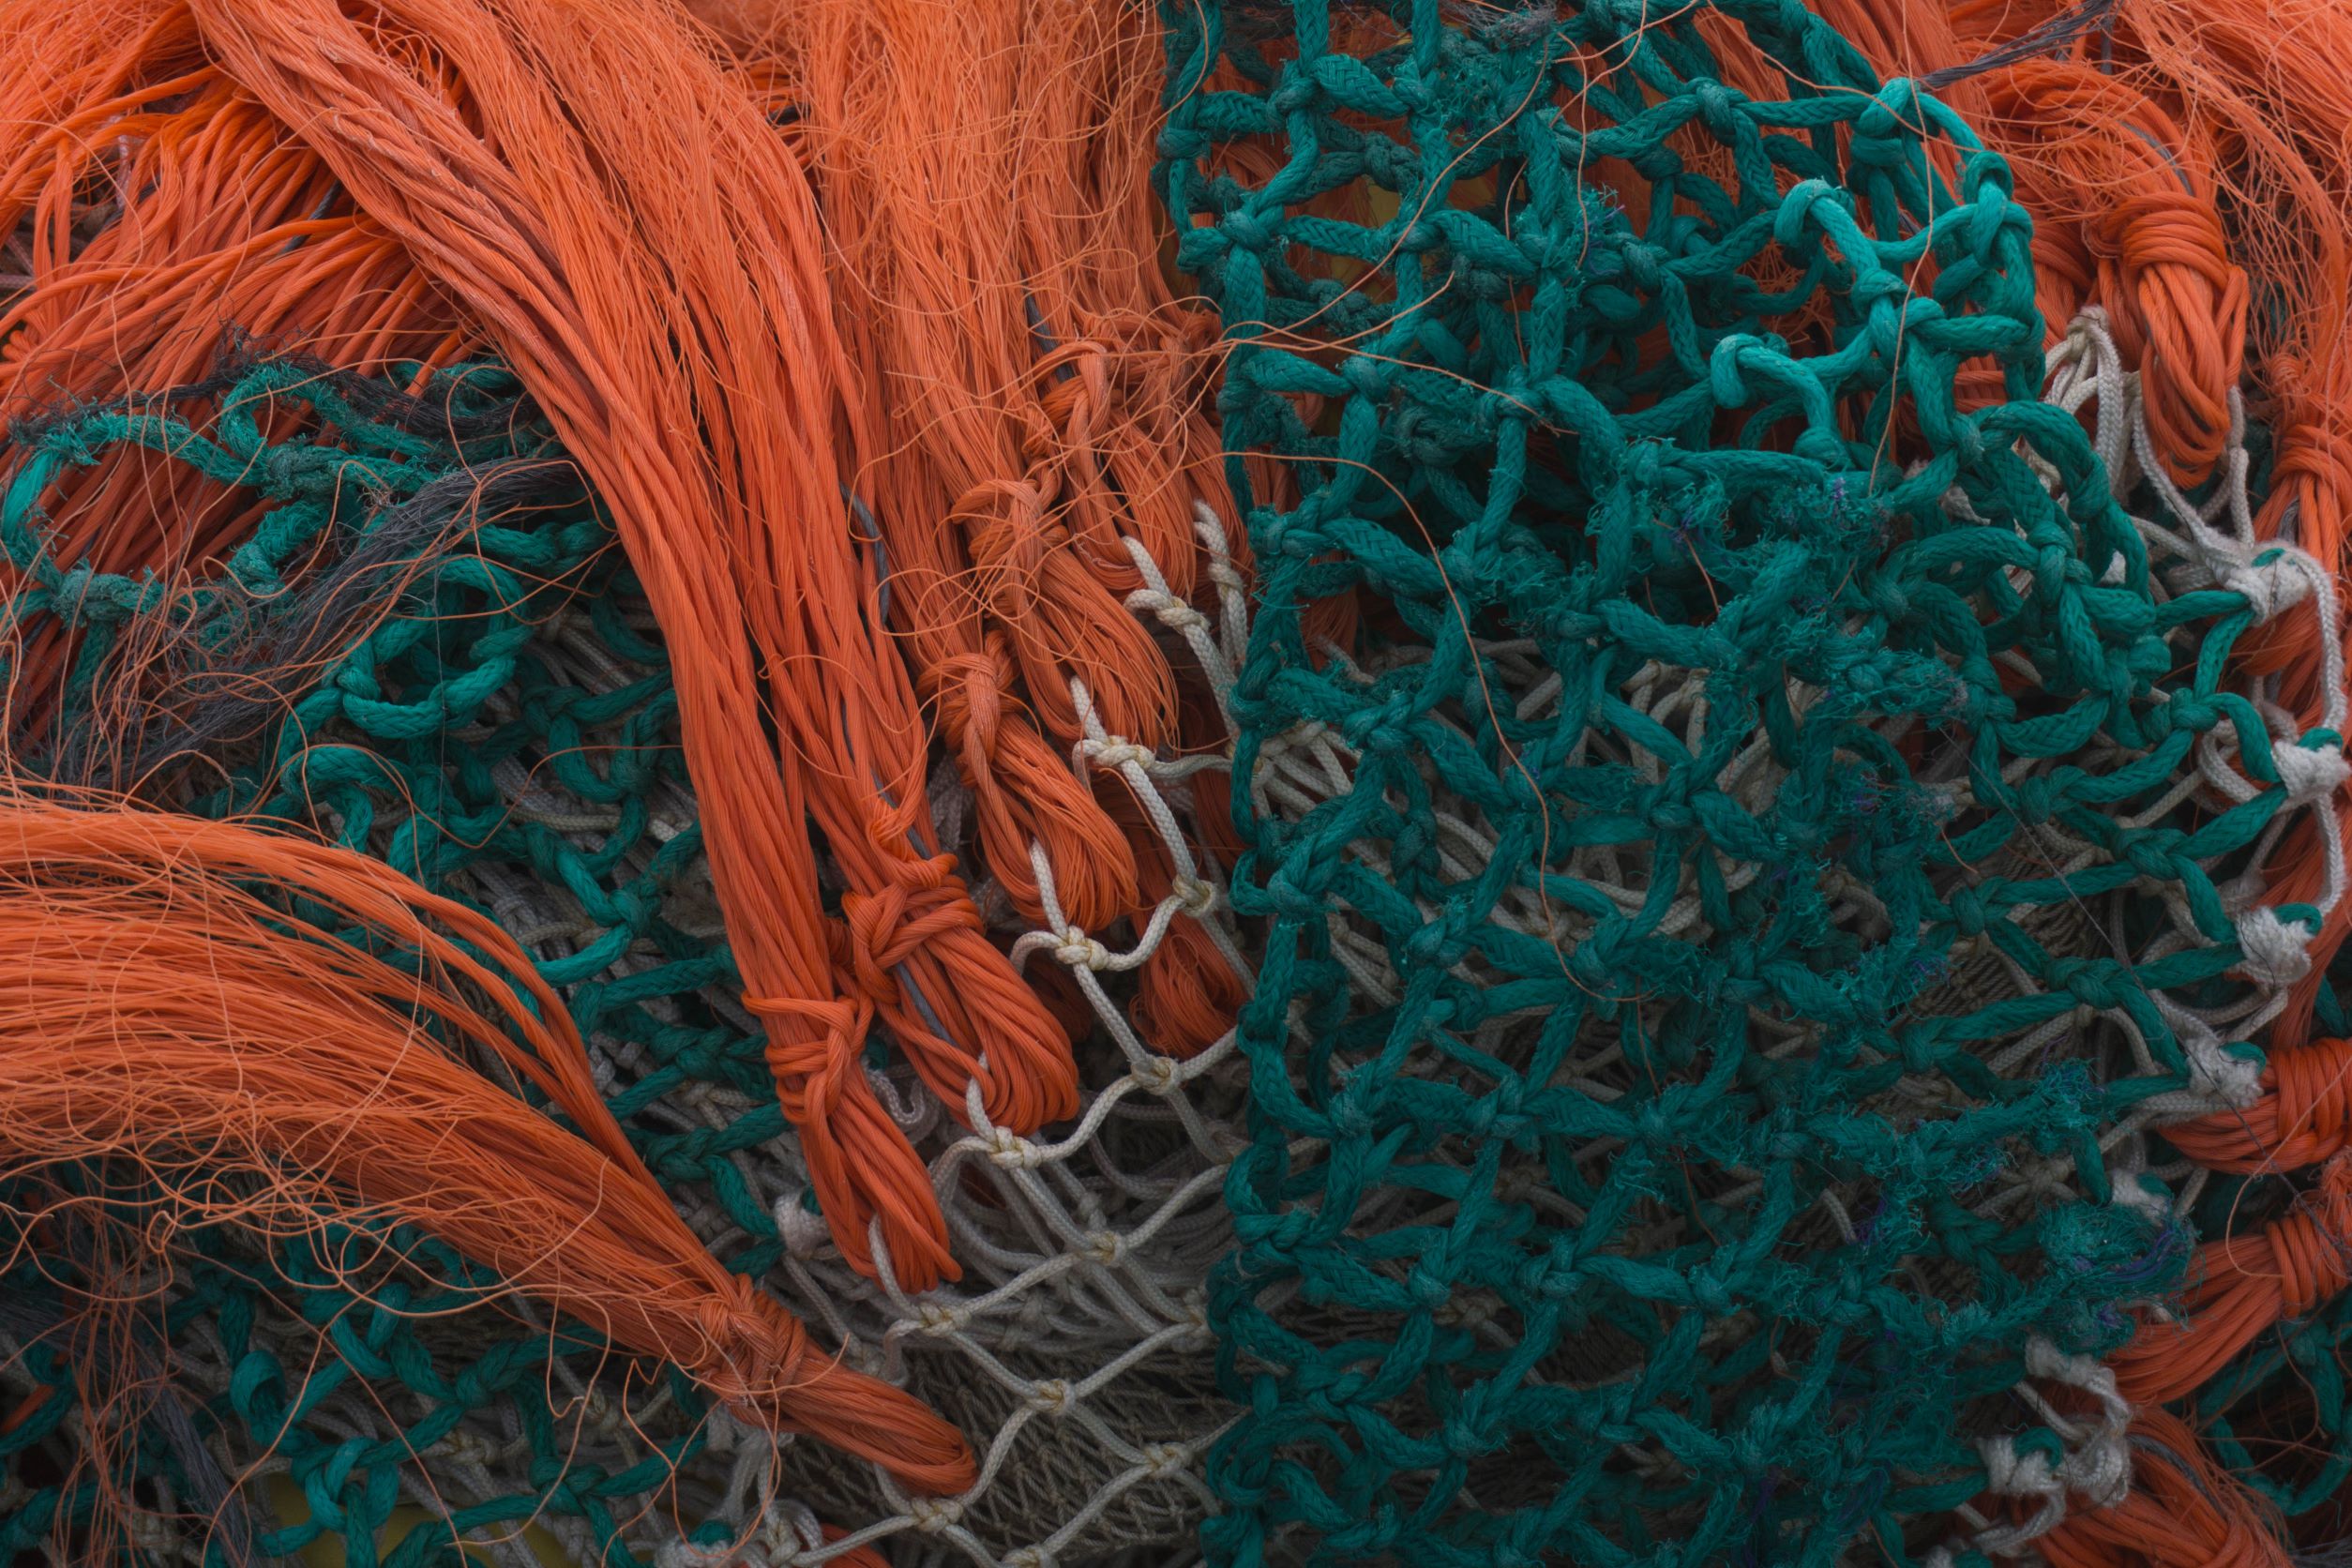 Das Bild zeigt ineinander verknotete Fischernetze in den Farben orange, weiß und grün.